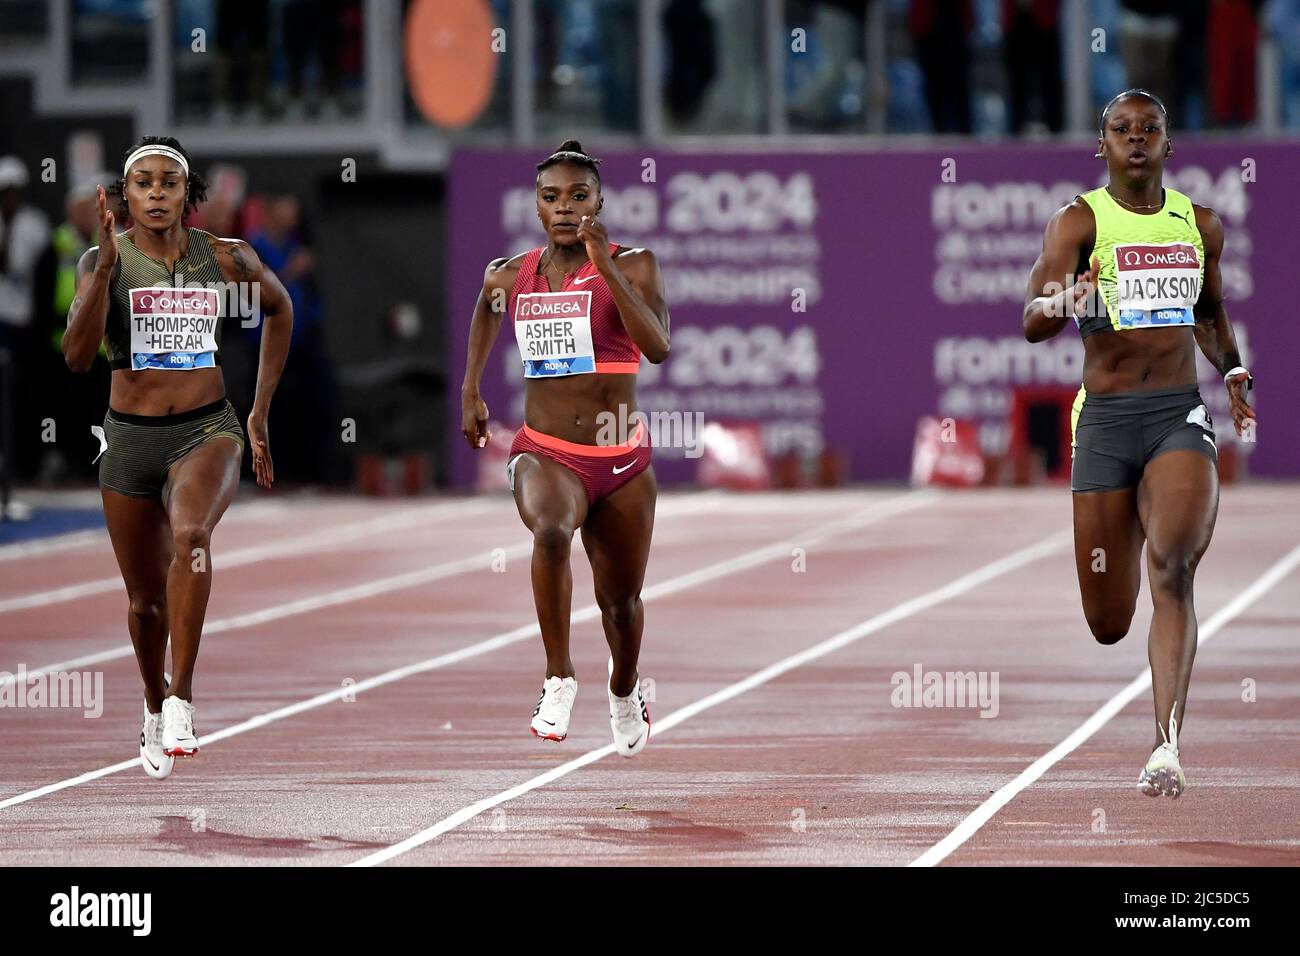 Elaine Thompson-Herah de la Jamaïque, Dina Asher-Smith de la Grande-Bretagne et Shericka Jackson de la Jamaïque concourent dans les 200m femmes pendant le diamant de l'IAAF Banque D'Images